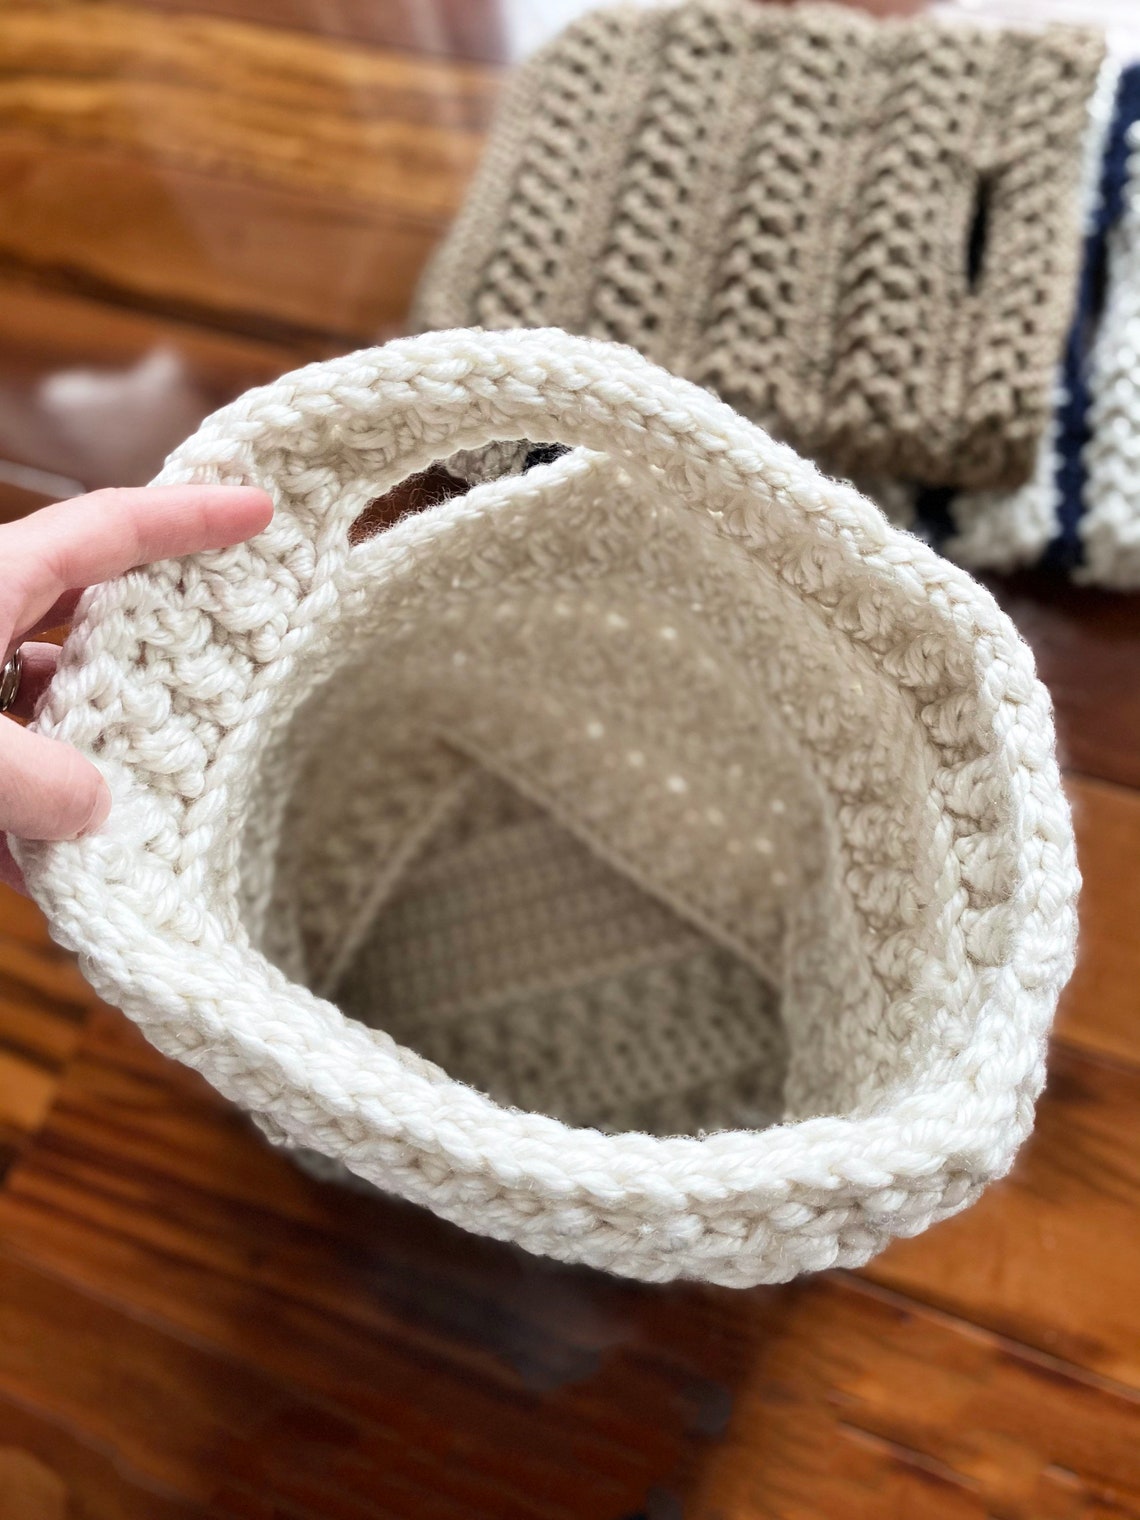 CROCHET PATTERN the Wander Crochet Tote in 2 Sizes Crochet - Etsy